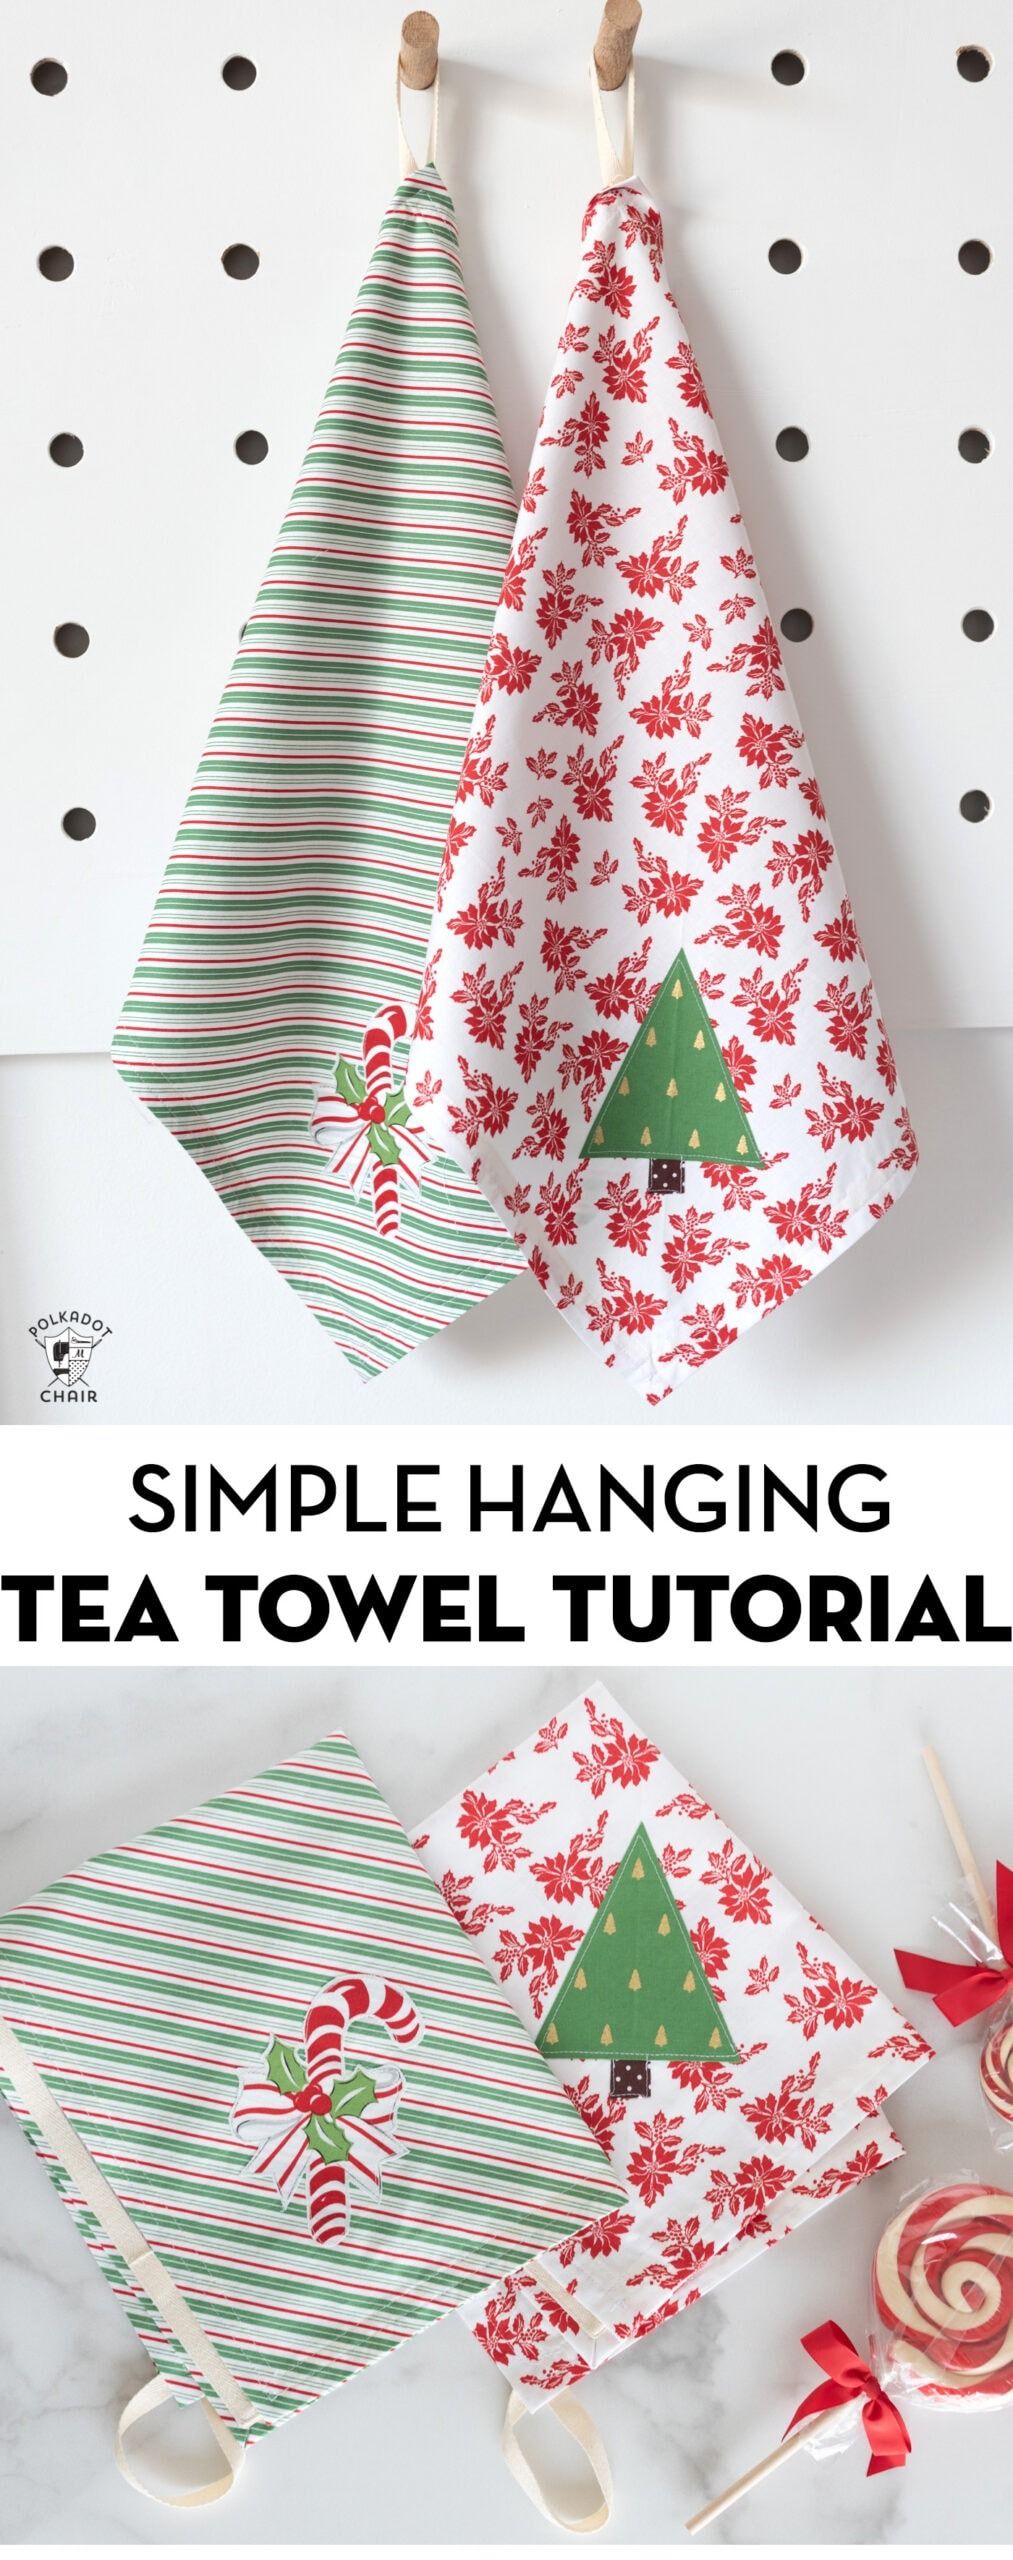 https://hips.hearstapps.com/hmg-prod/images/diy-gifts-for-mom-hanging-tea-towel-1661360533.jpeg